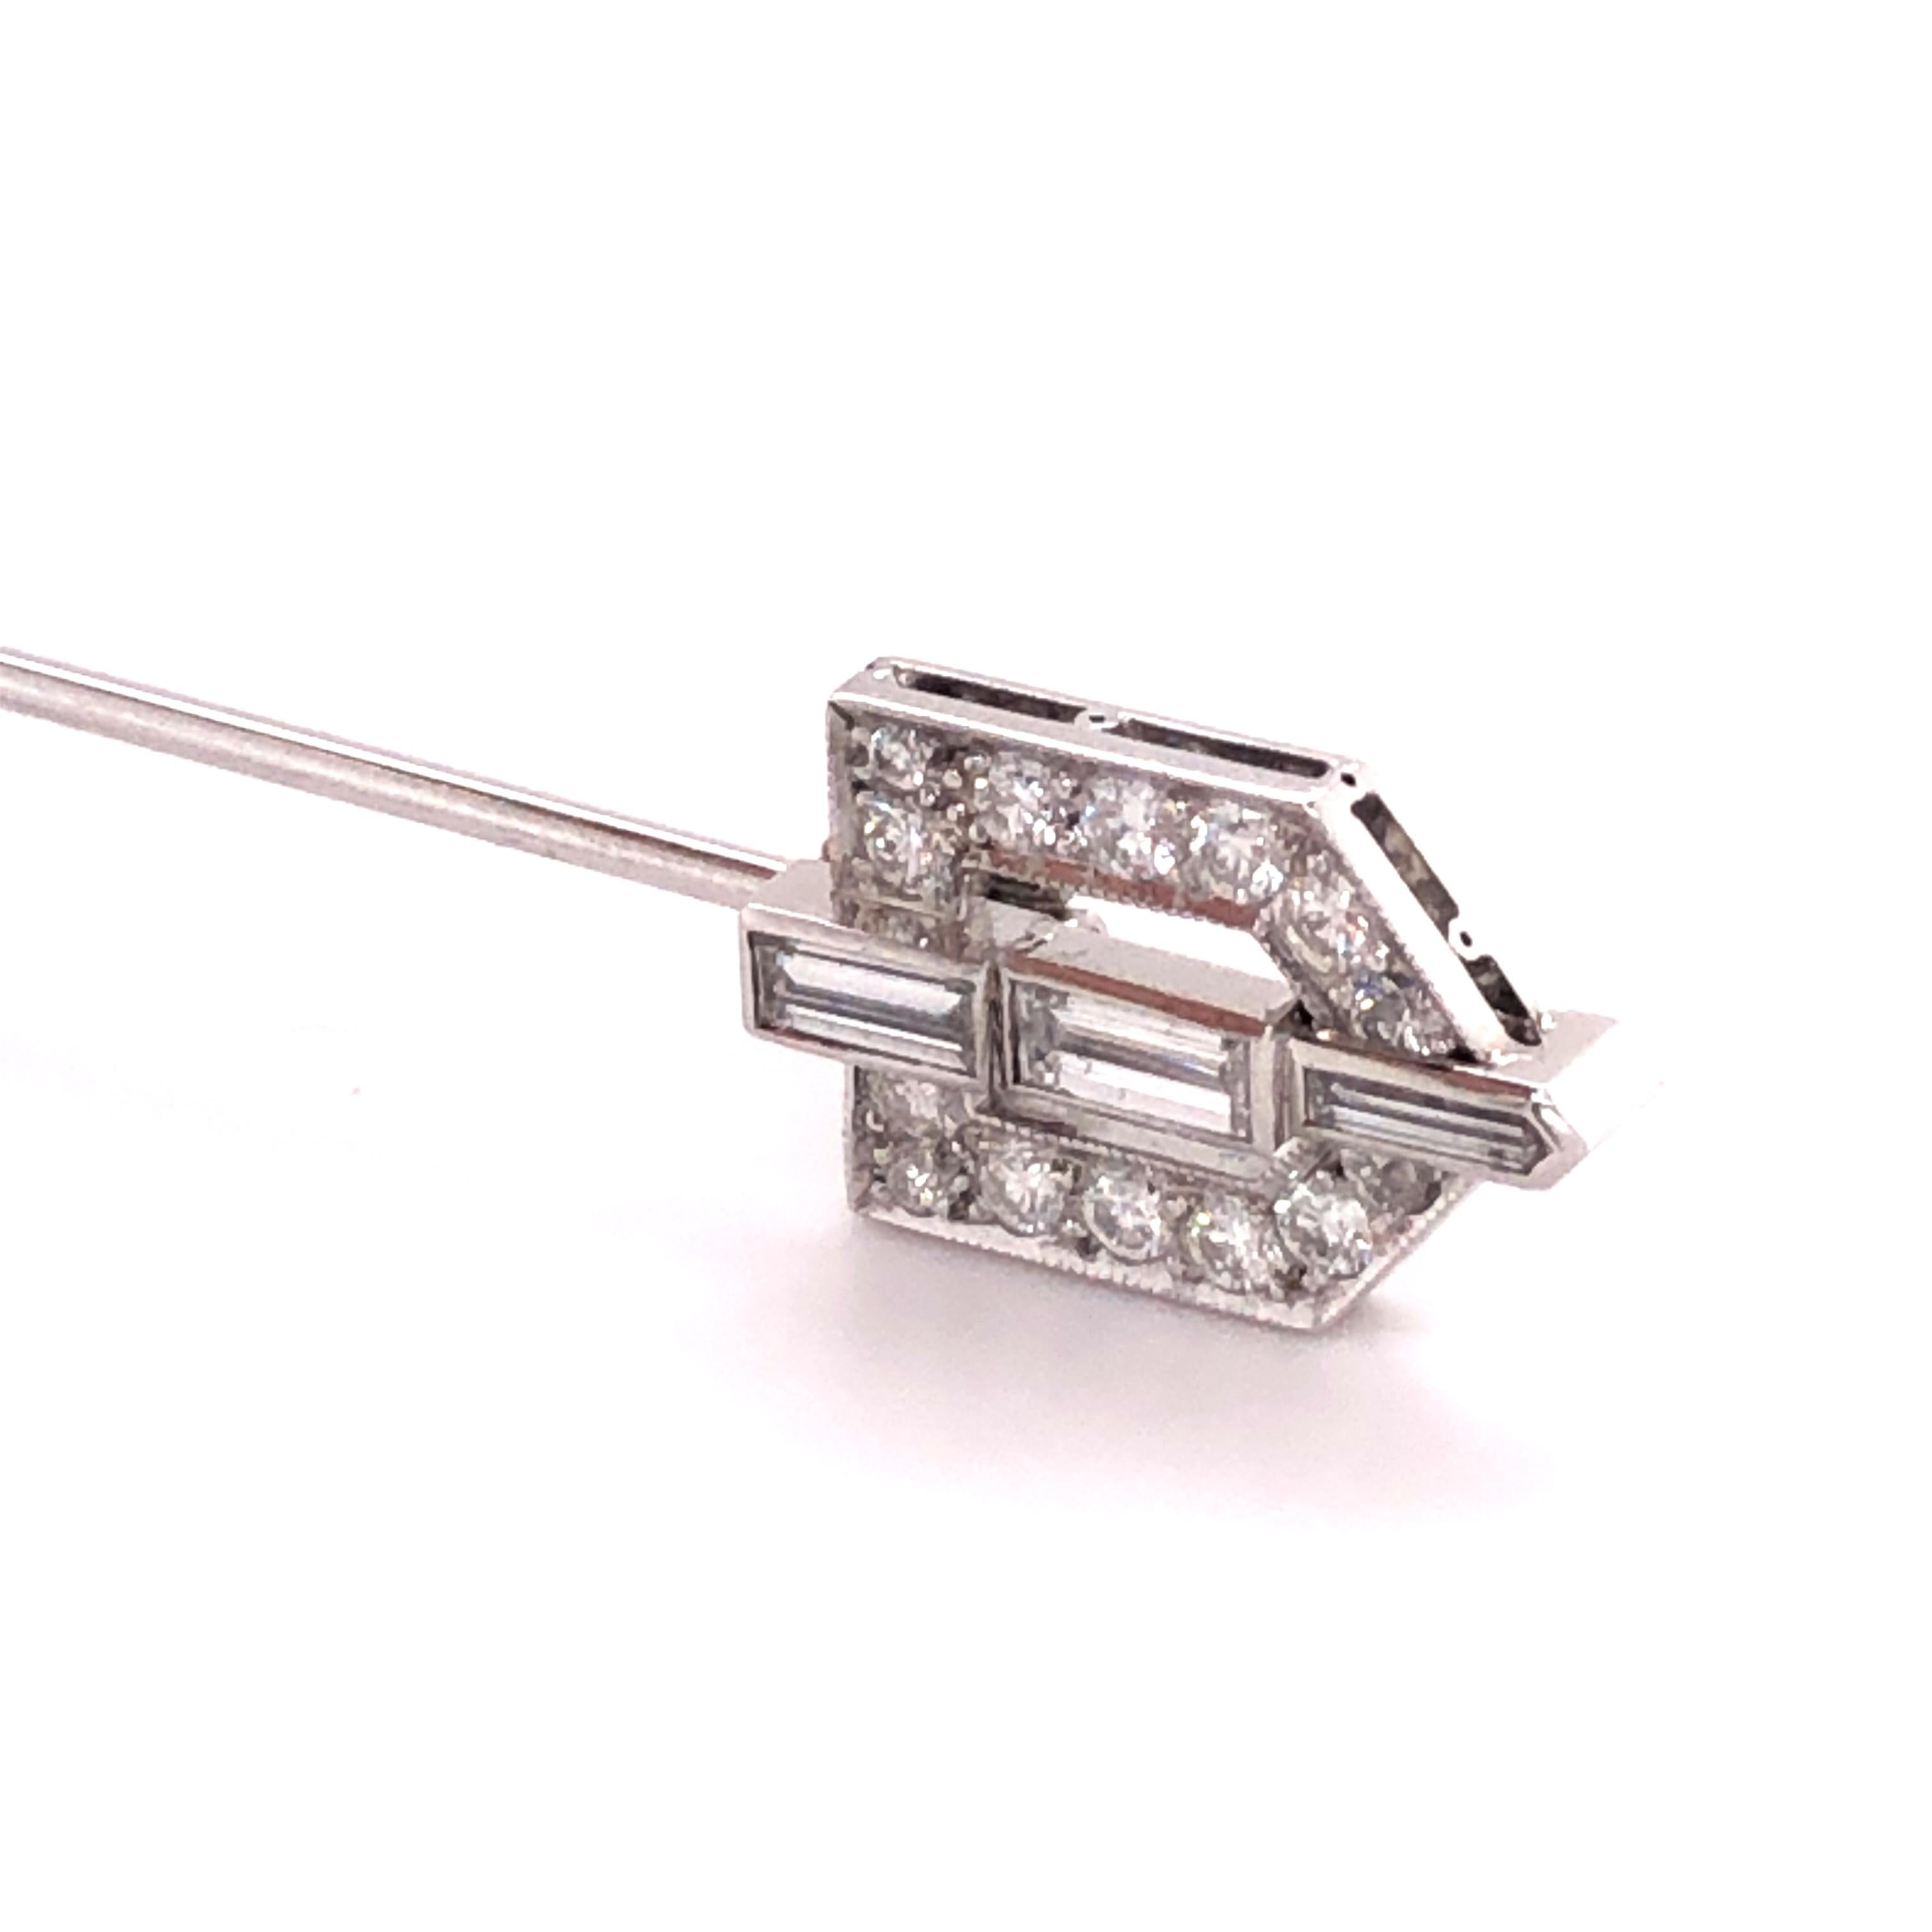 Art Deco Jabot Pin with Diamonds in Platinum and 18 Karat White Gold für Damen oder Herren